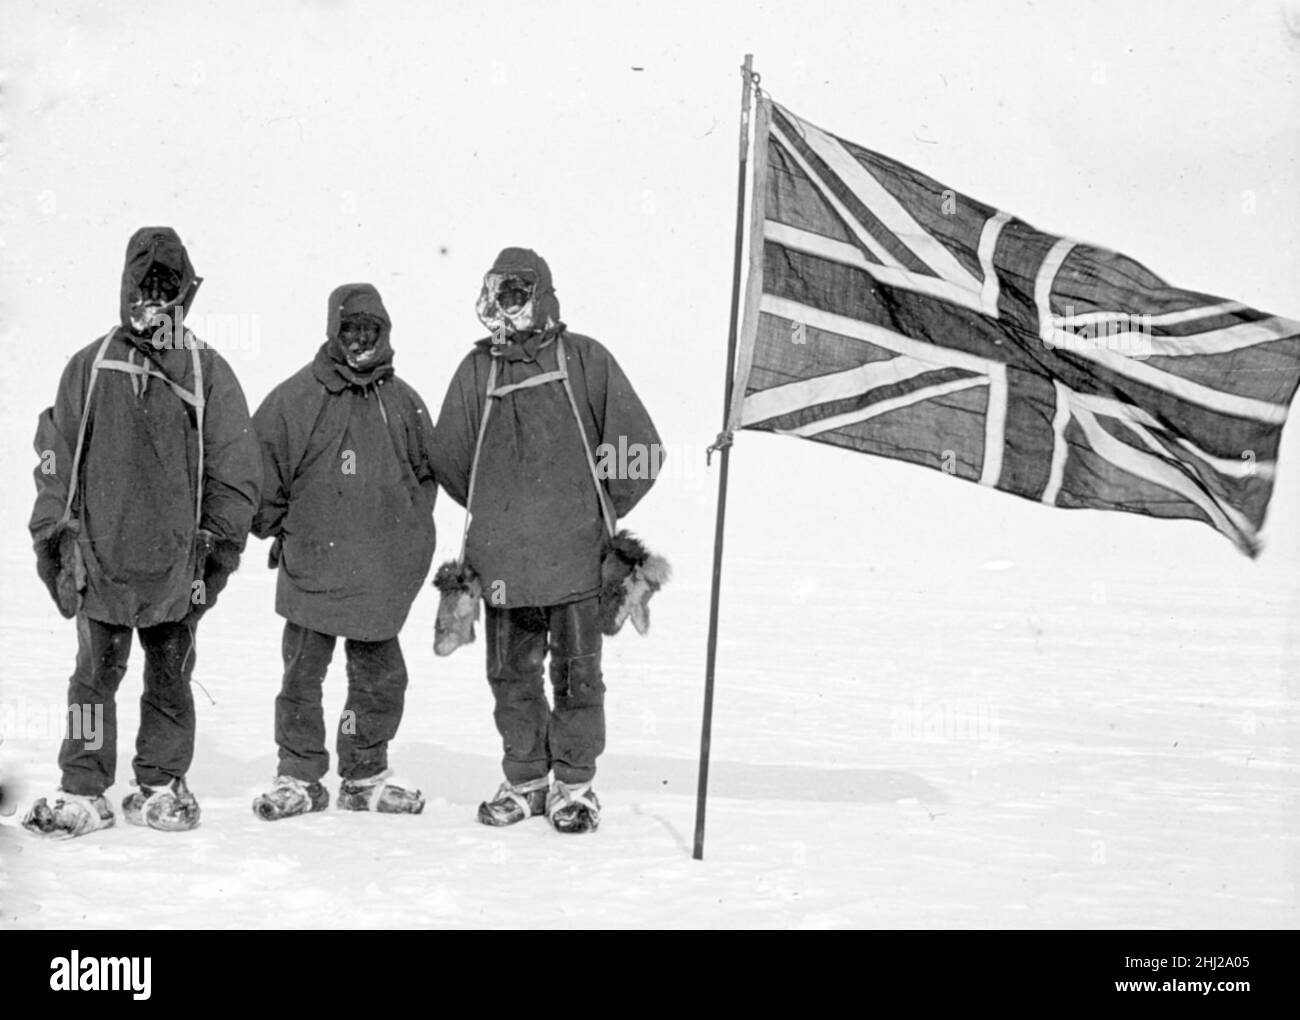 ERNEST SHACKLETON (1874-1922) Anglo-irischer Antarktisforscher. Von links Eric Marshall, Frank Wild und Shackleton auf ihrem südlichsten Breitengrad von 88 Grad 23 min am 9. Januar 1909 während der Nimrod-Expedition. Stockfoto